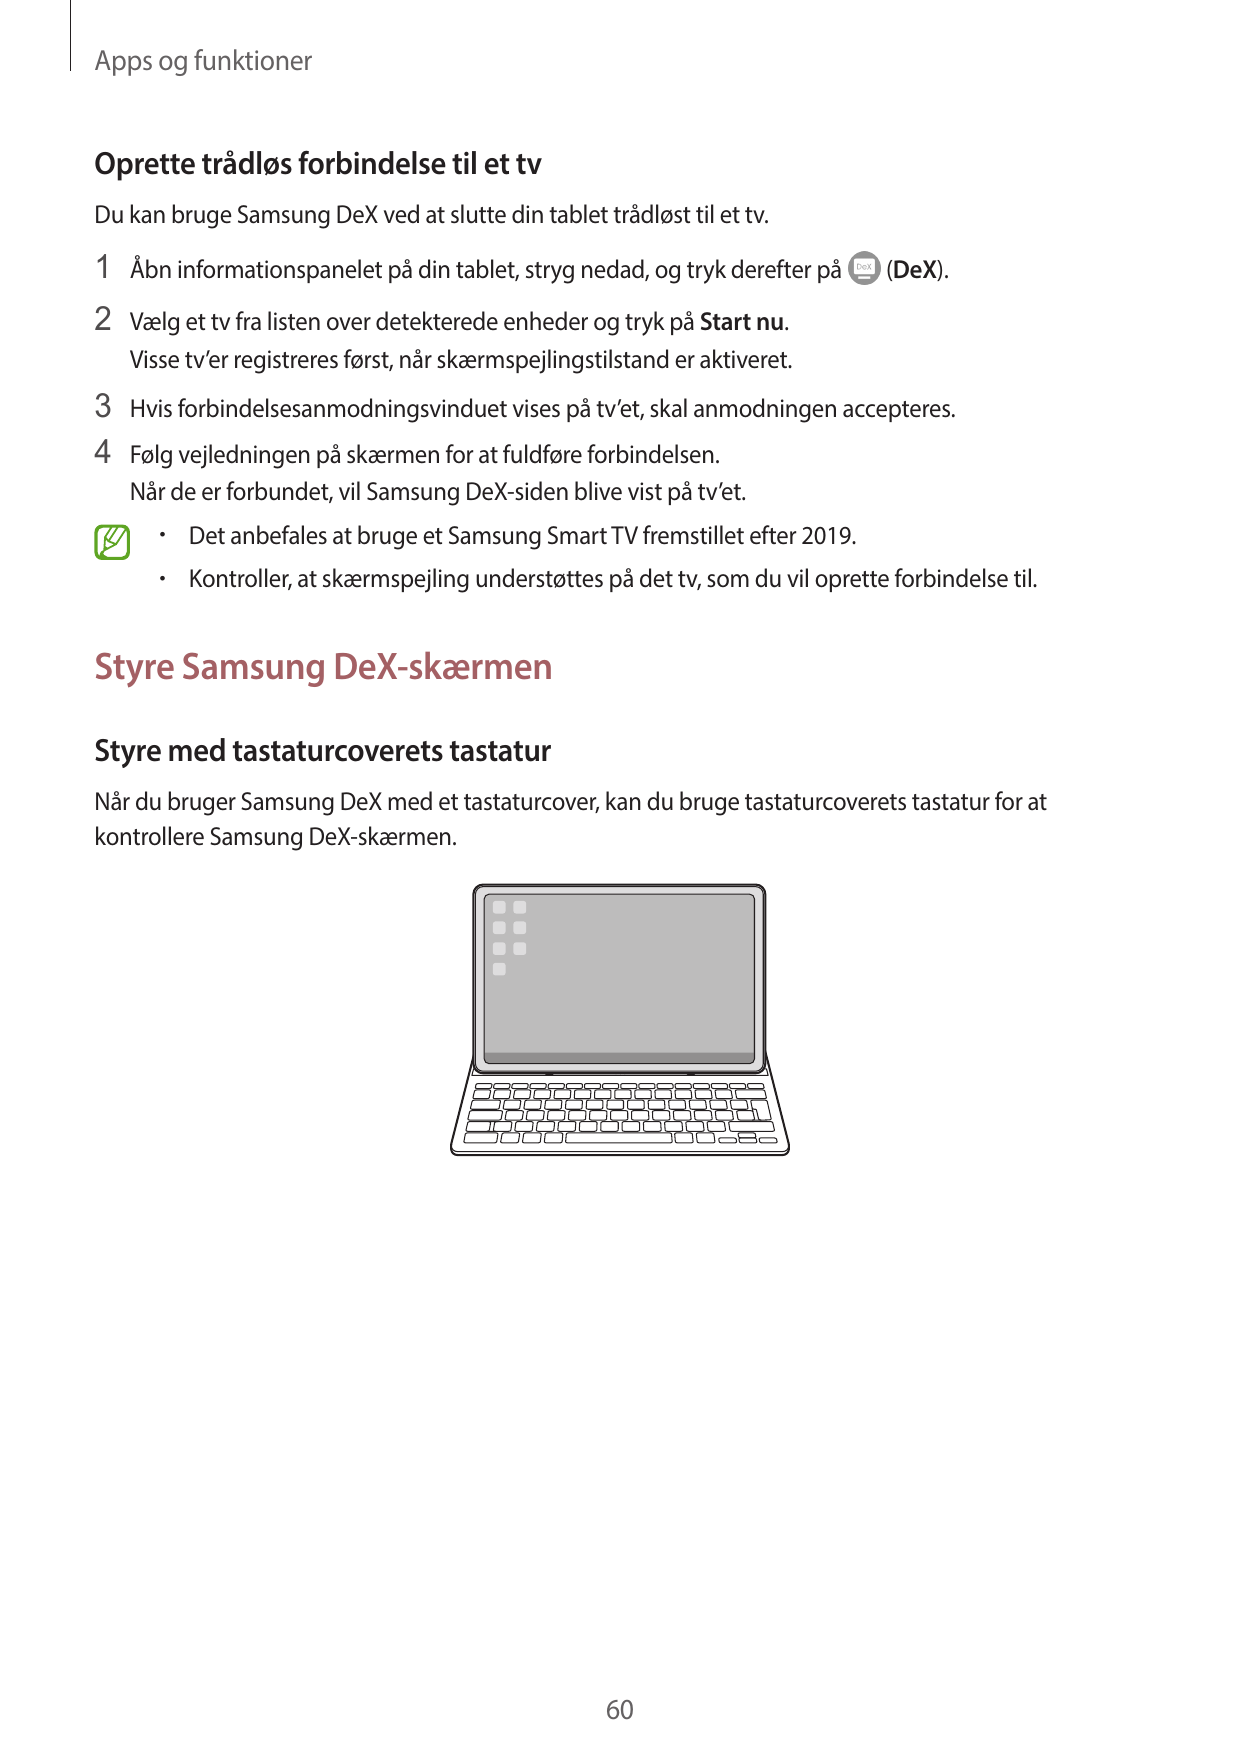 Apps og funktionerOprette trådløs forbindelse til et tvDu kan bruge Samsung DeX ved at slutte din tablet trådløst til et tv.1 Åb